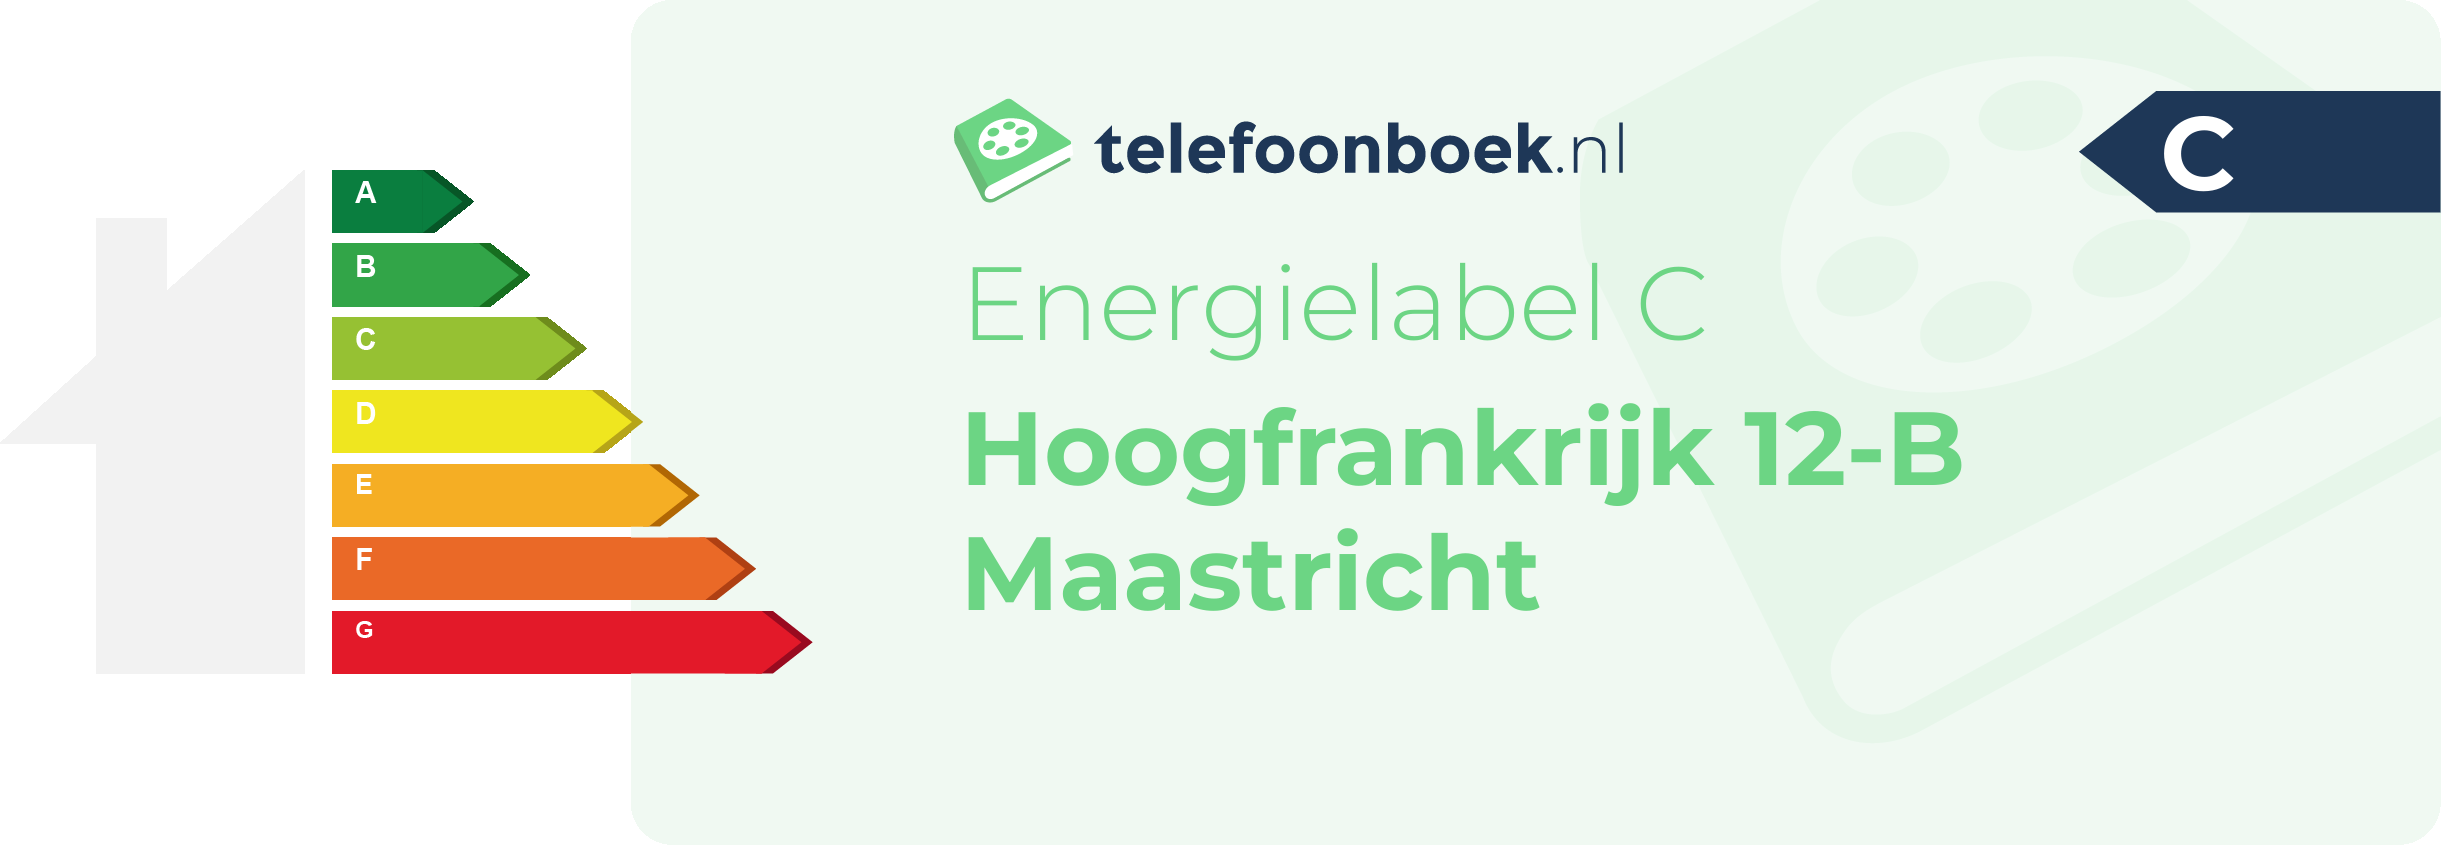 Energielabel Hoogfrankrijk 12-B Maastricht